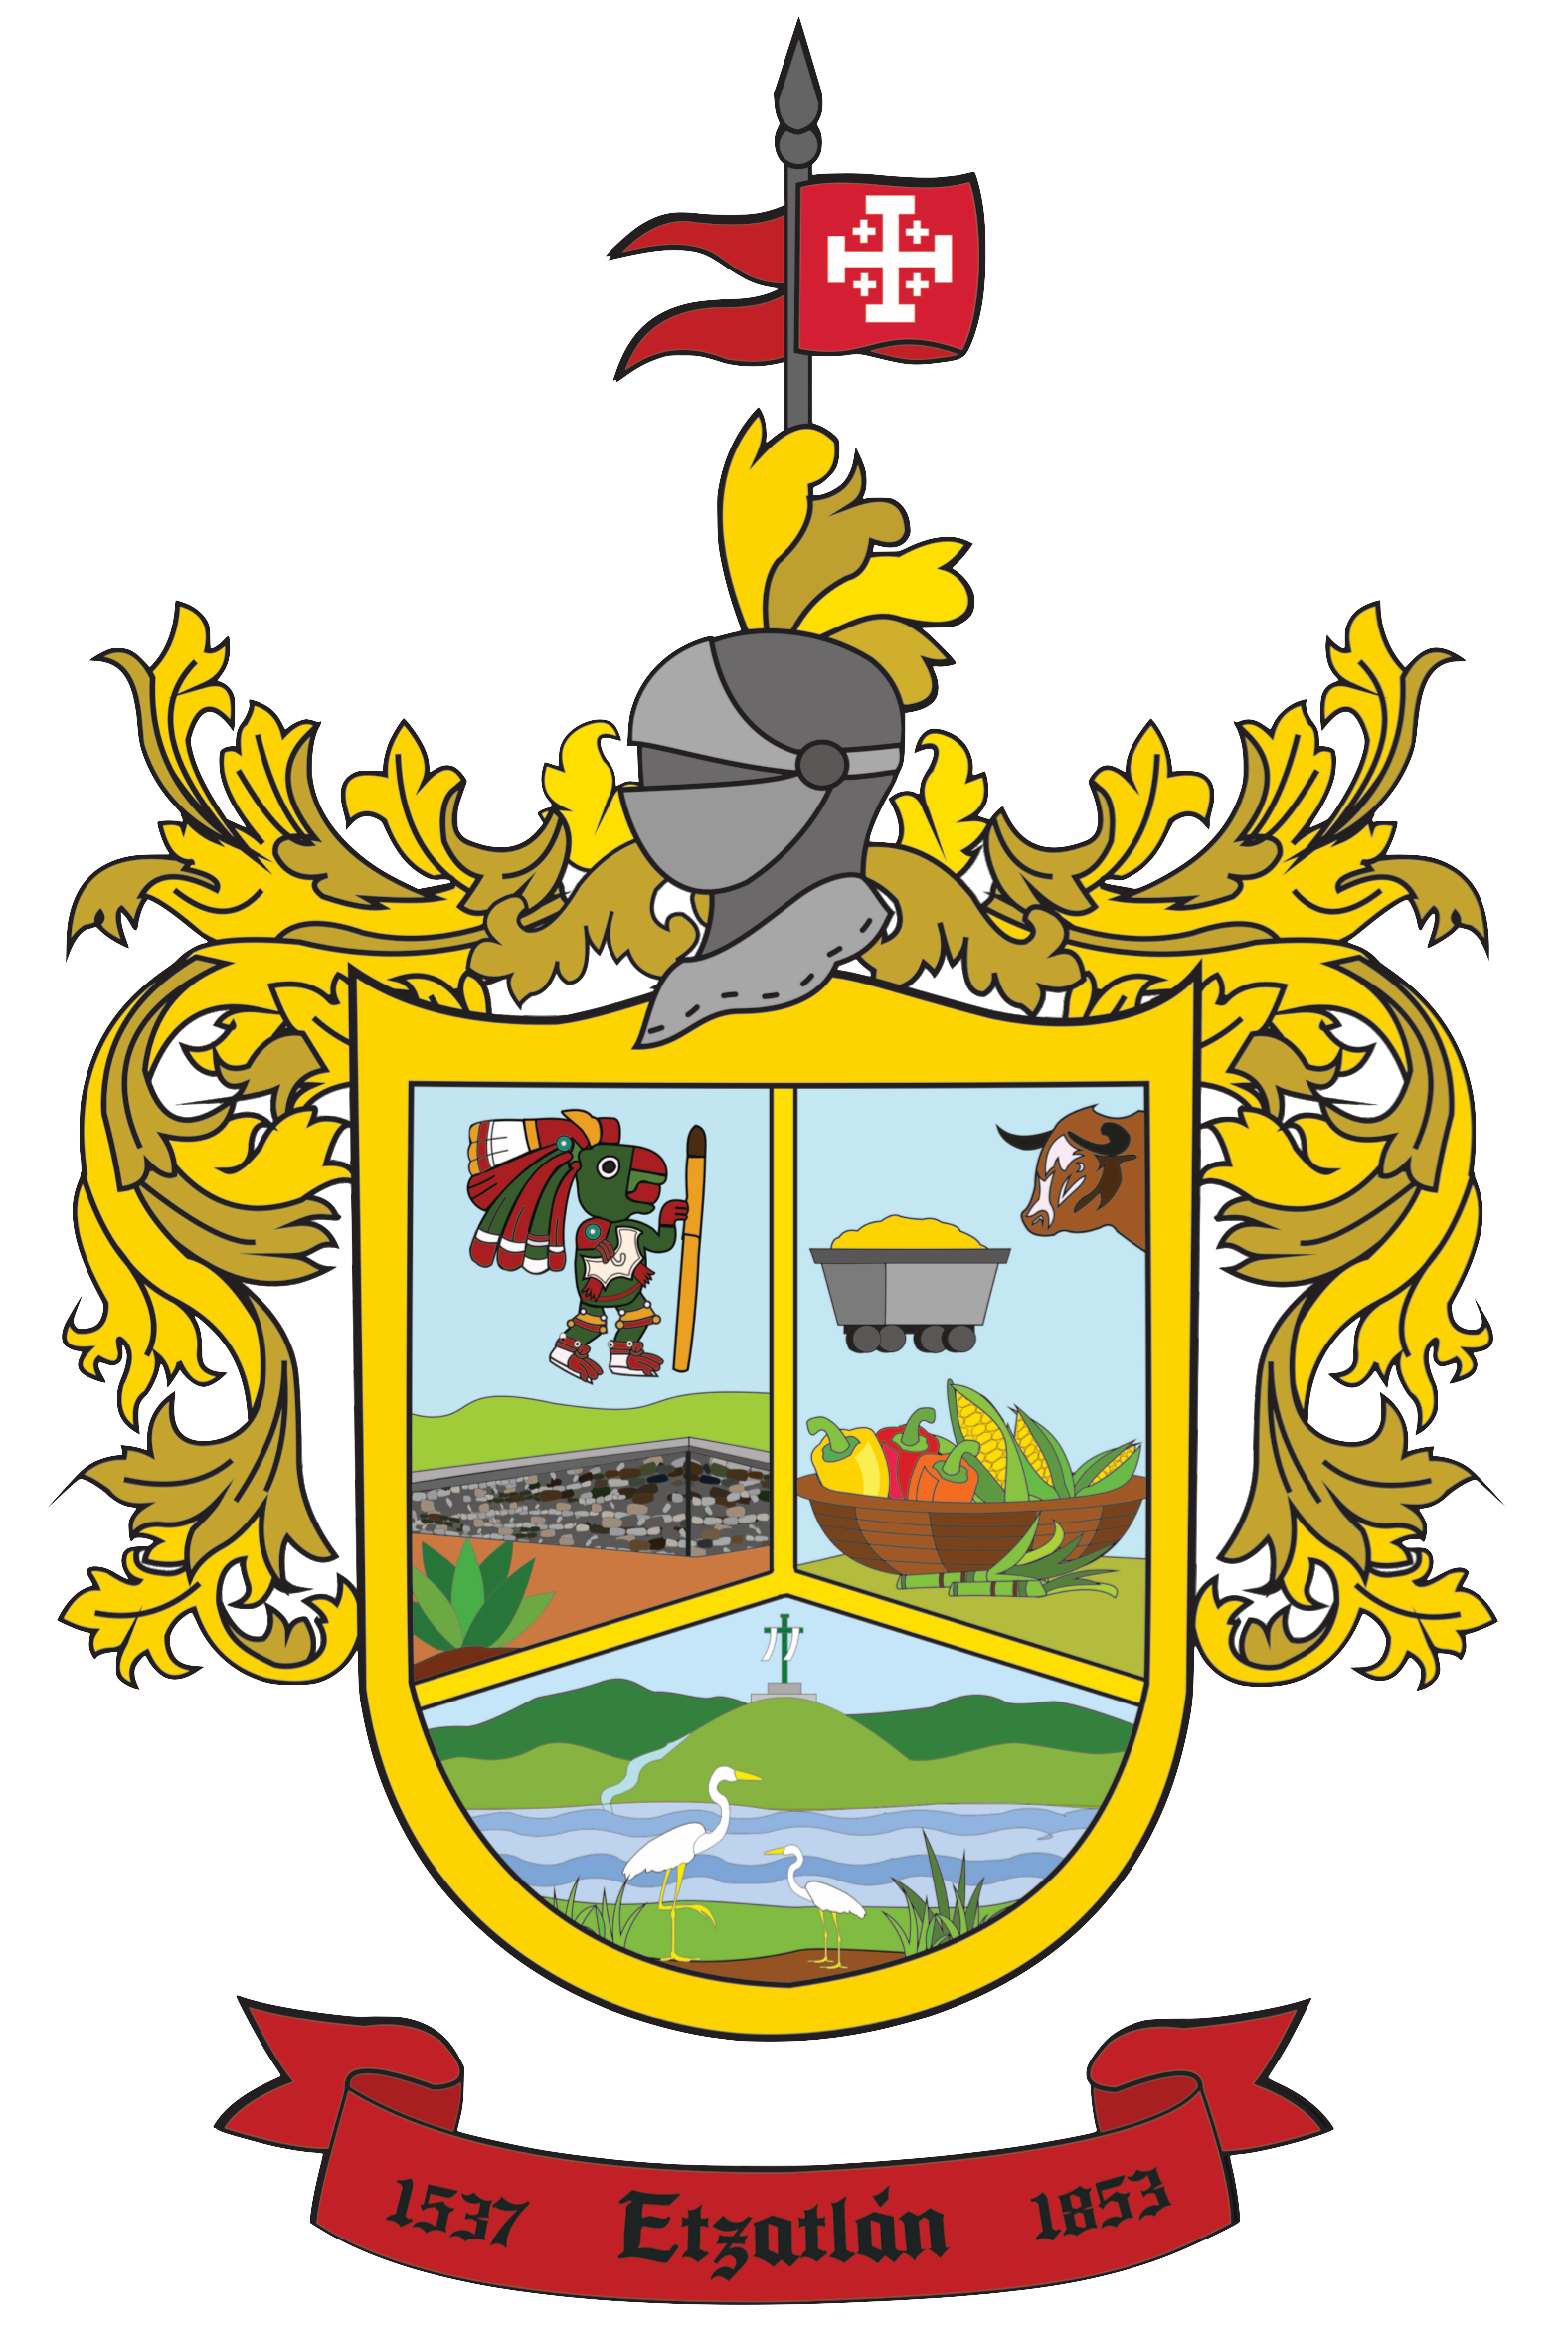 Bláson municipio de Etzatlán